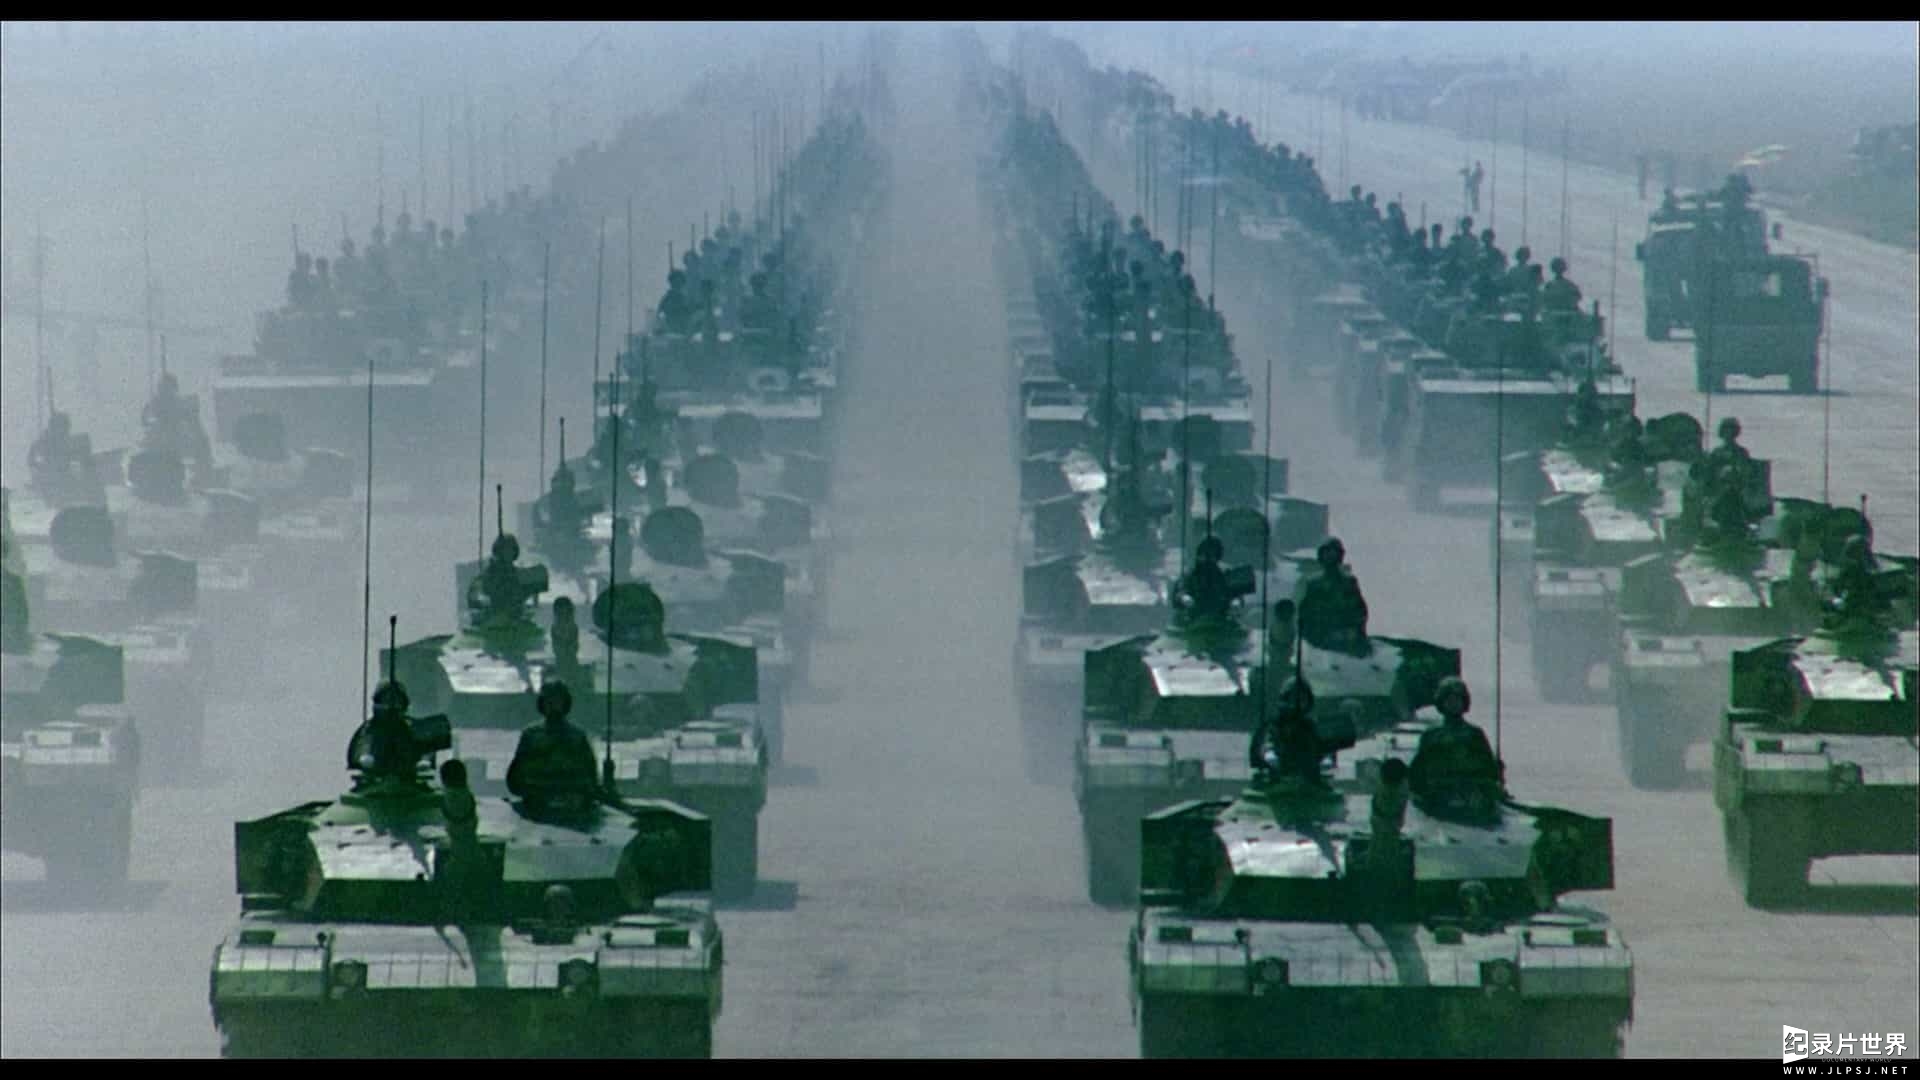 China's 60th Anniversary Chinese Military Celebration 2009 BluRay REMUX 1080p AVC LPCM5